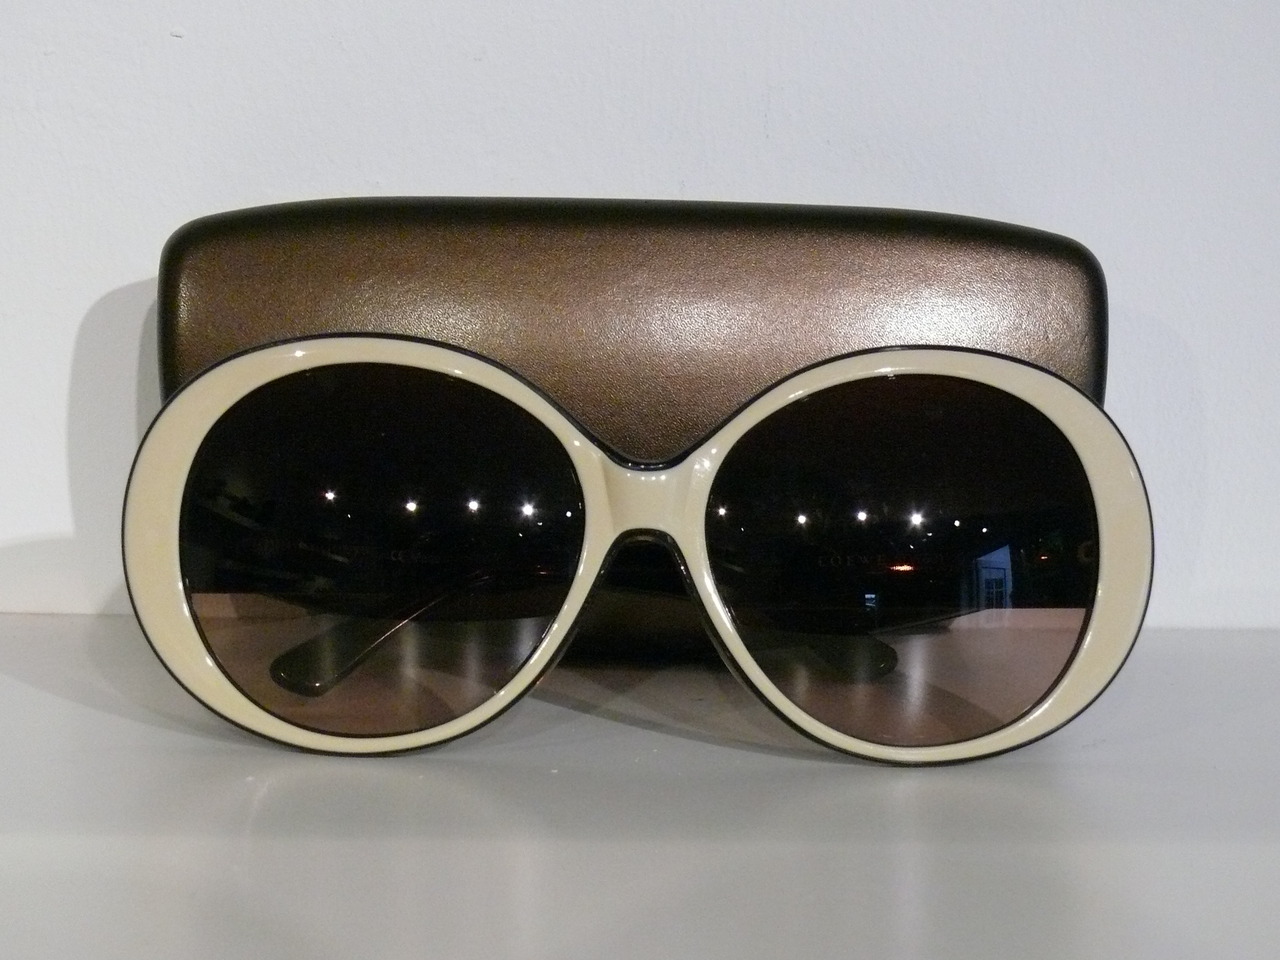 LOEWE sunglasses cream and brown. Phoenix price